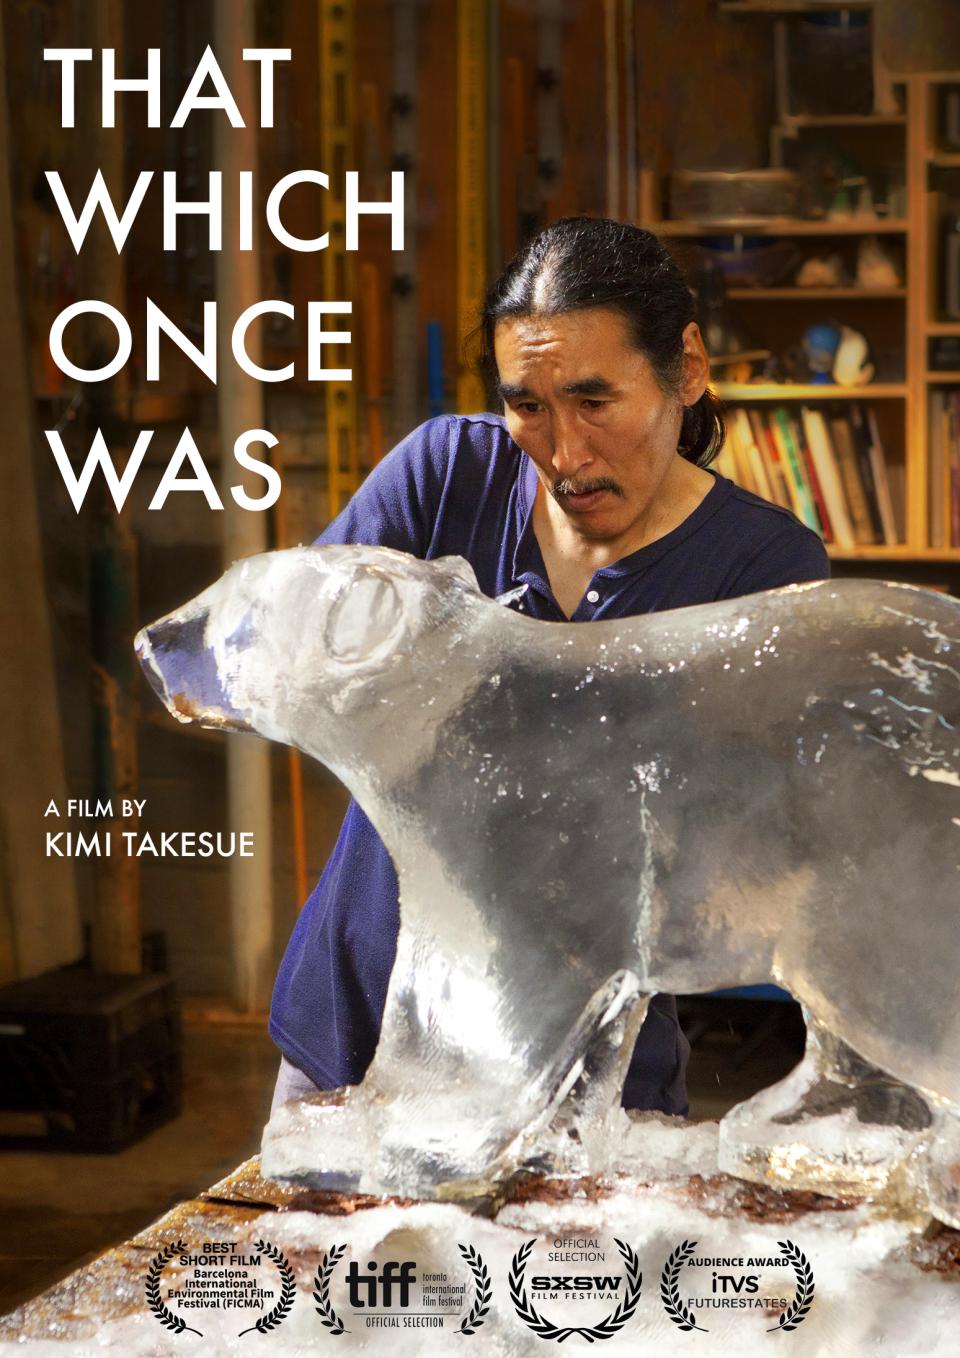 An Inuk ice carver carves an ice bear